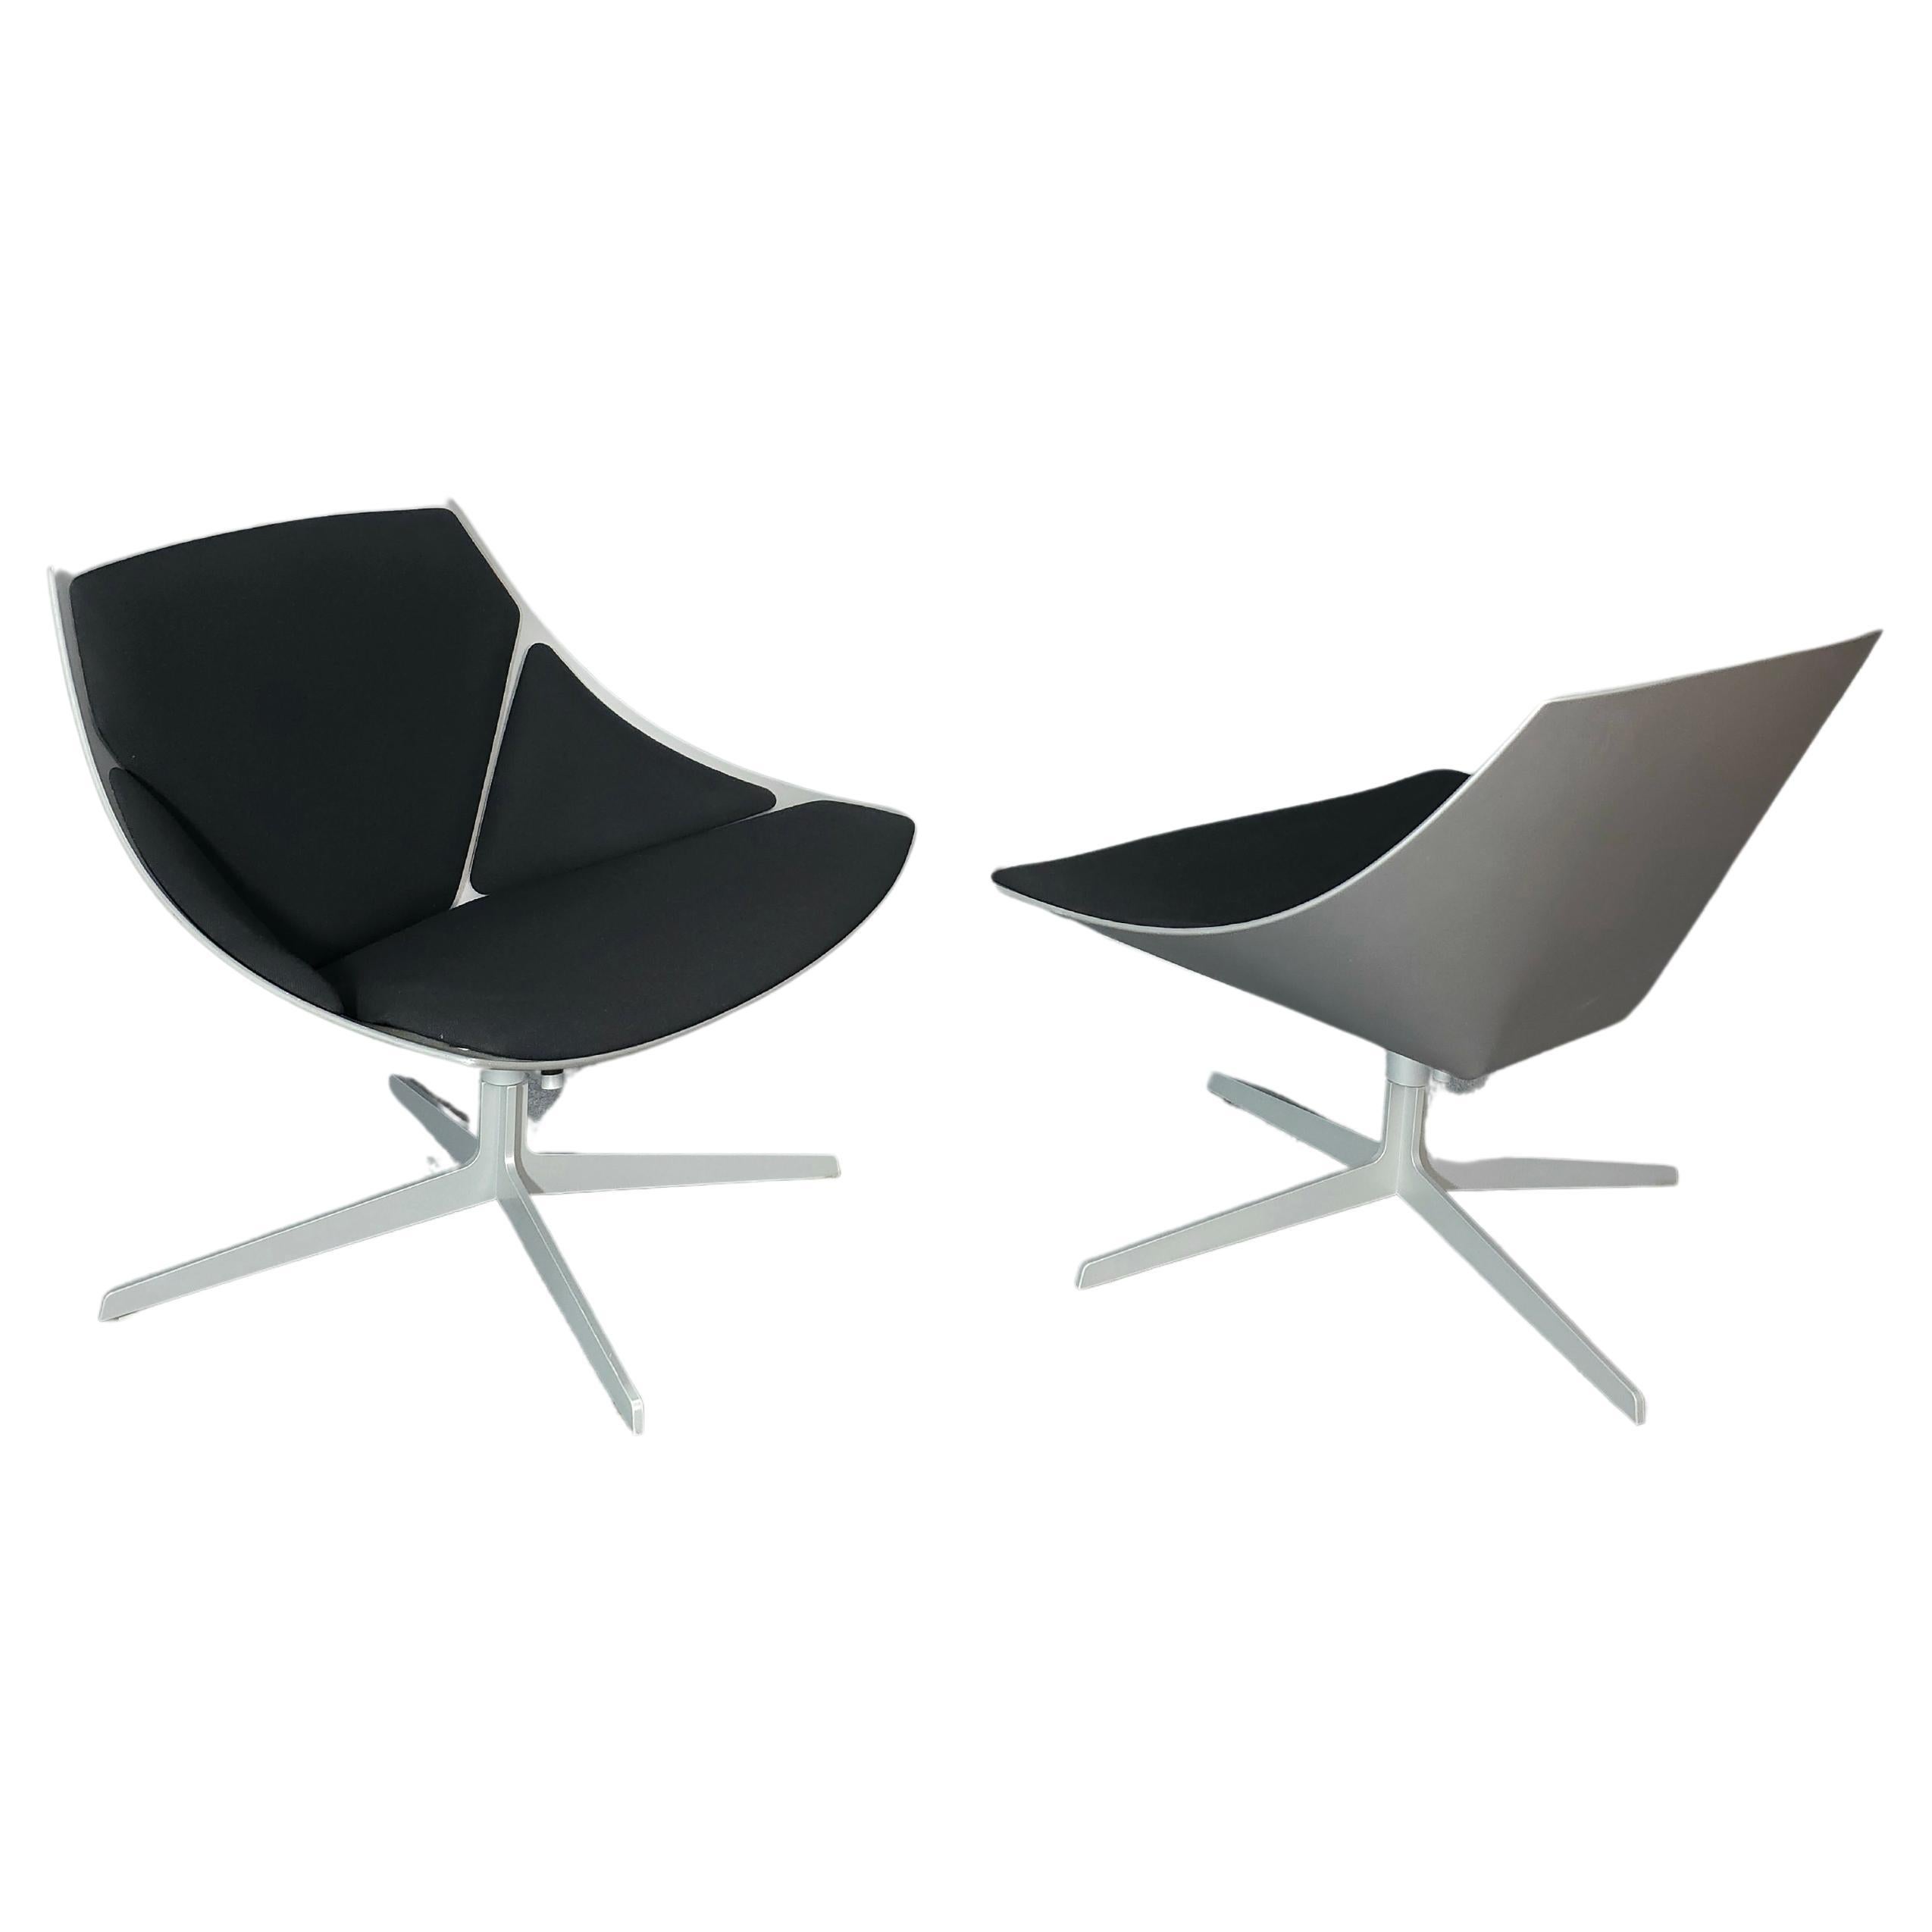 Jehs & Laub for Fritz Hansen Swivel Chair Modern Pair Denmark Design 2007 For Sale